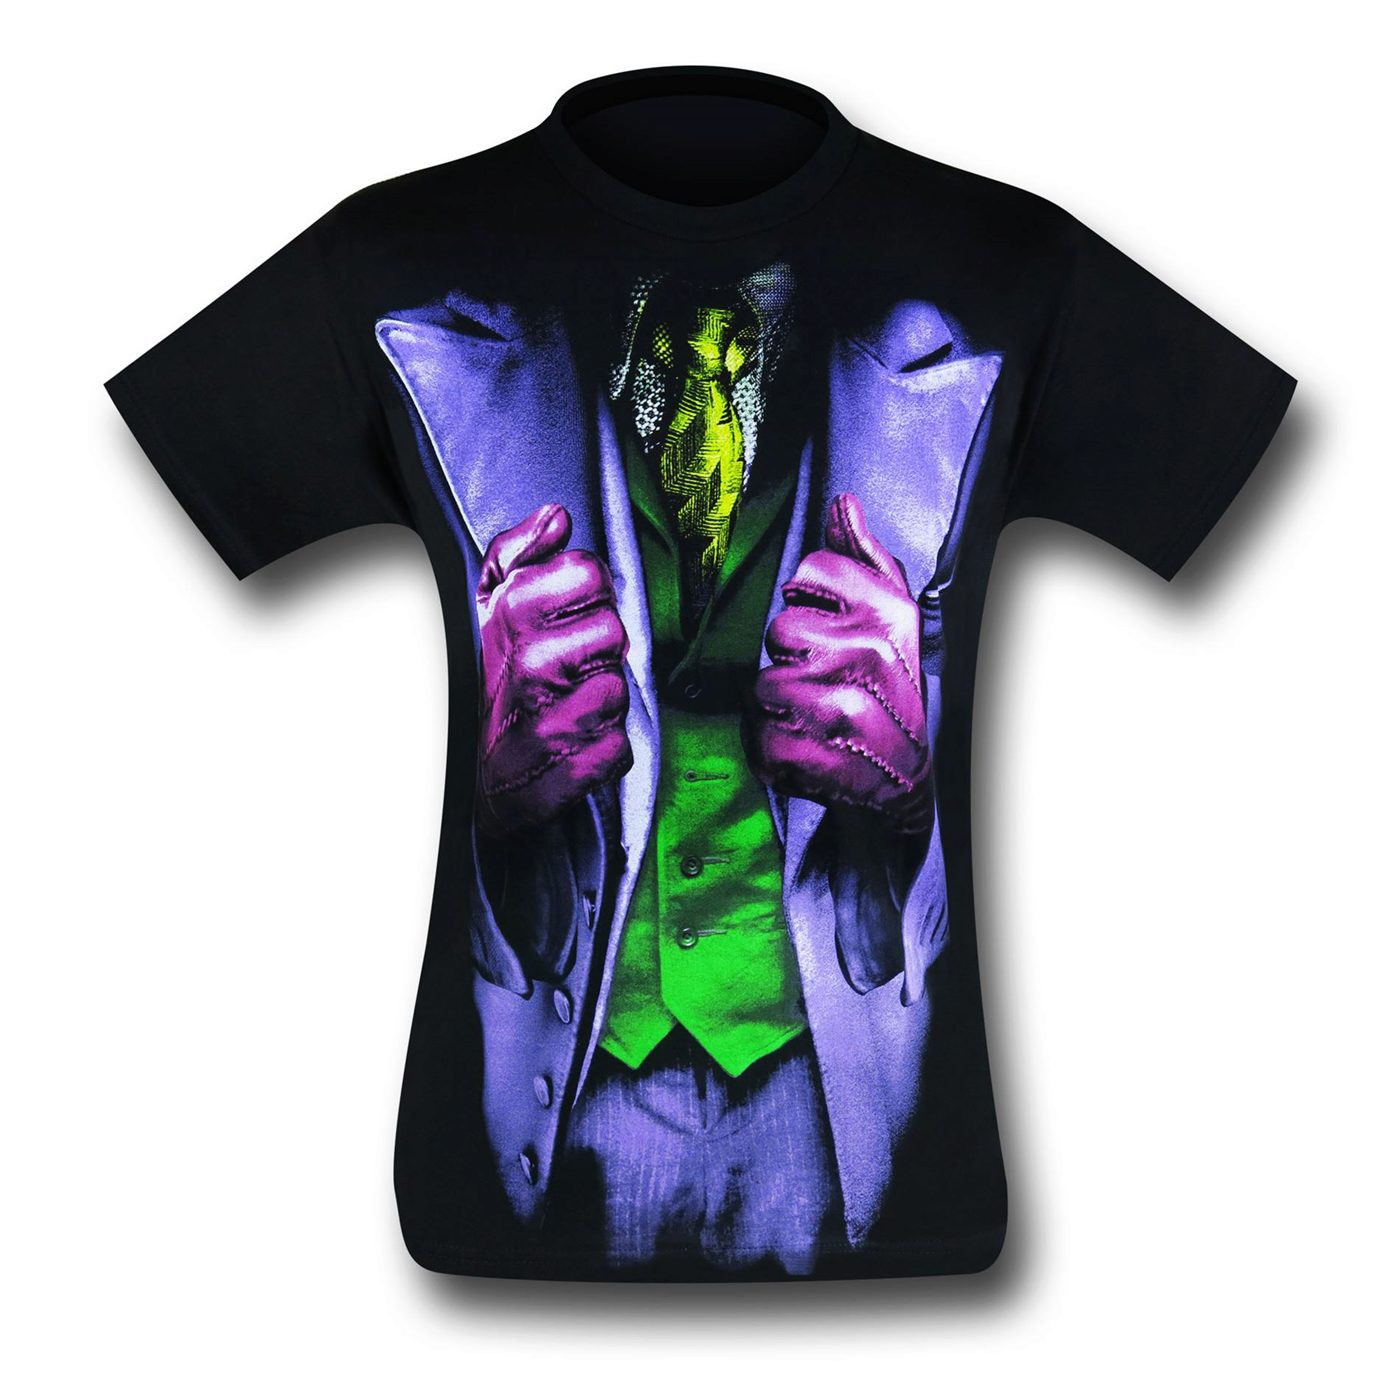 Joker Dark Knight Movie Costume T-Shirt